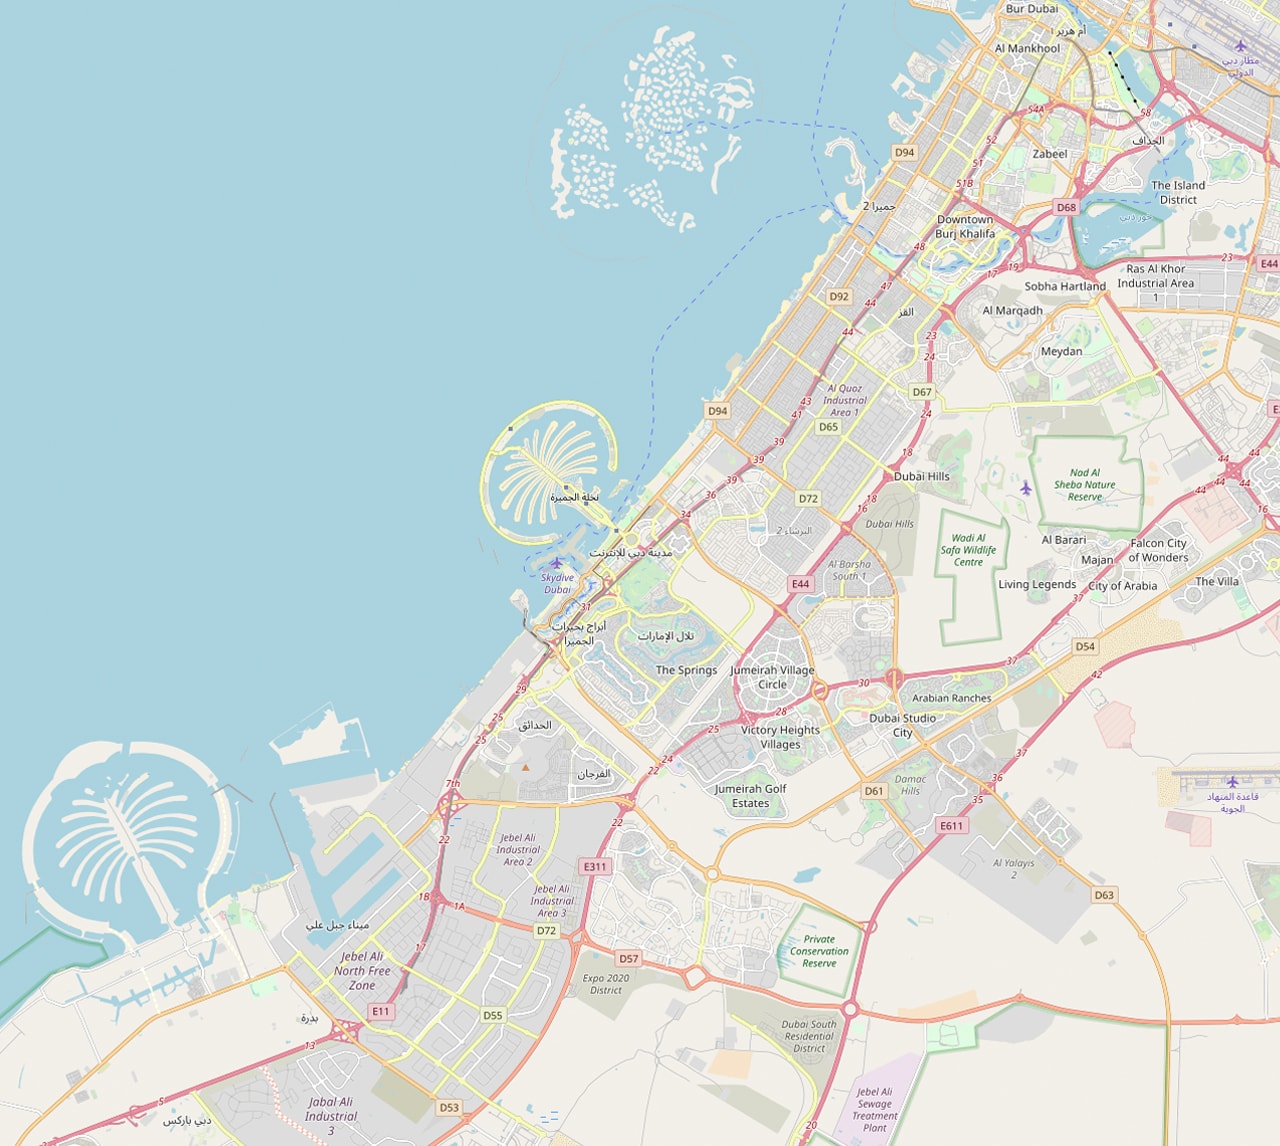 OpenStreetMap | Esri Basemaps